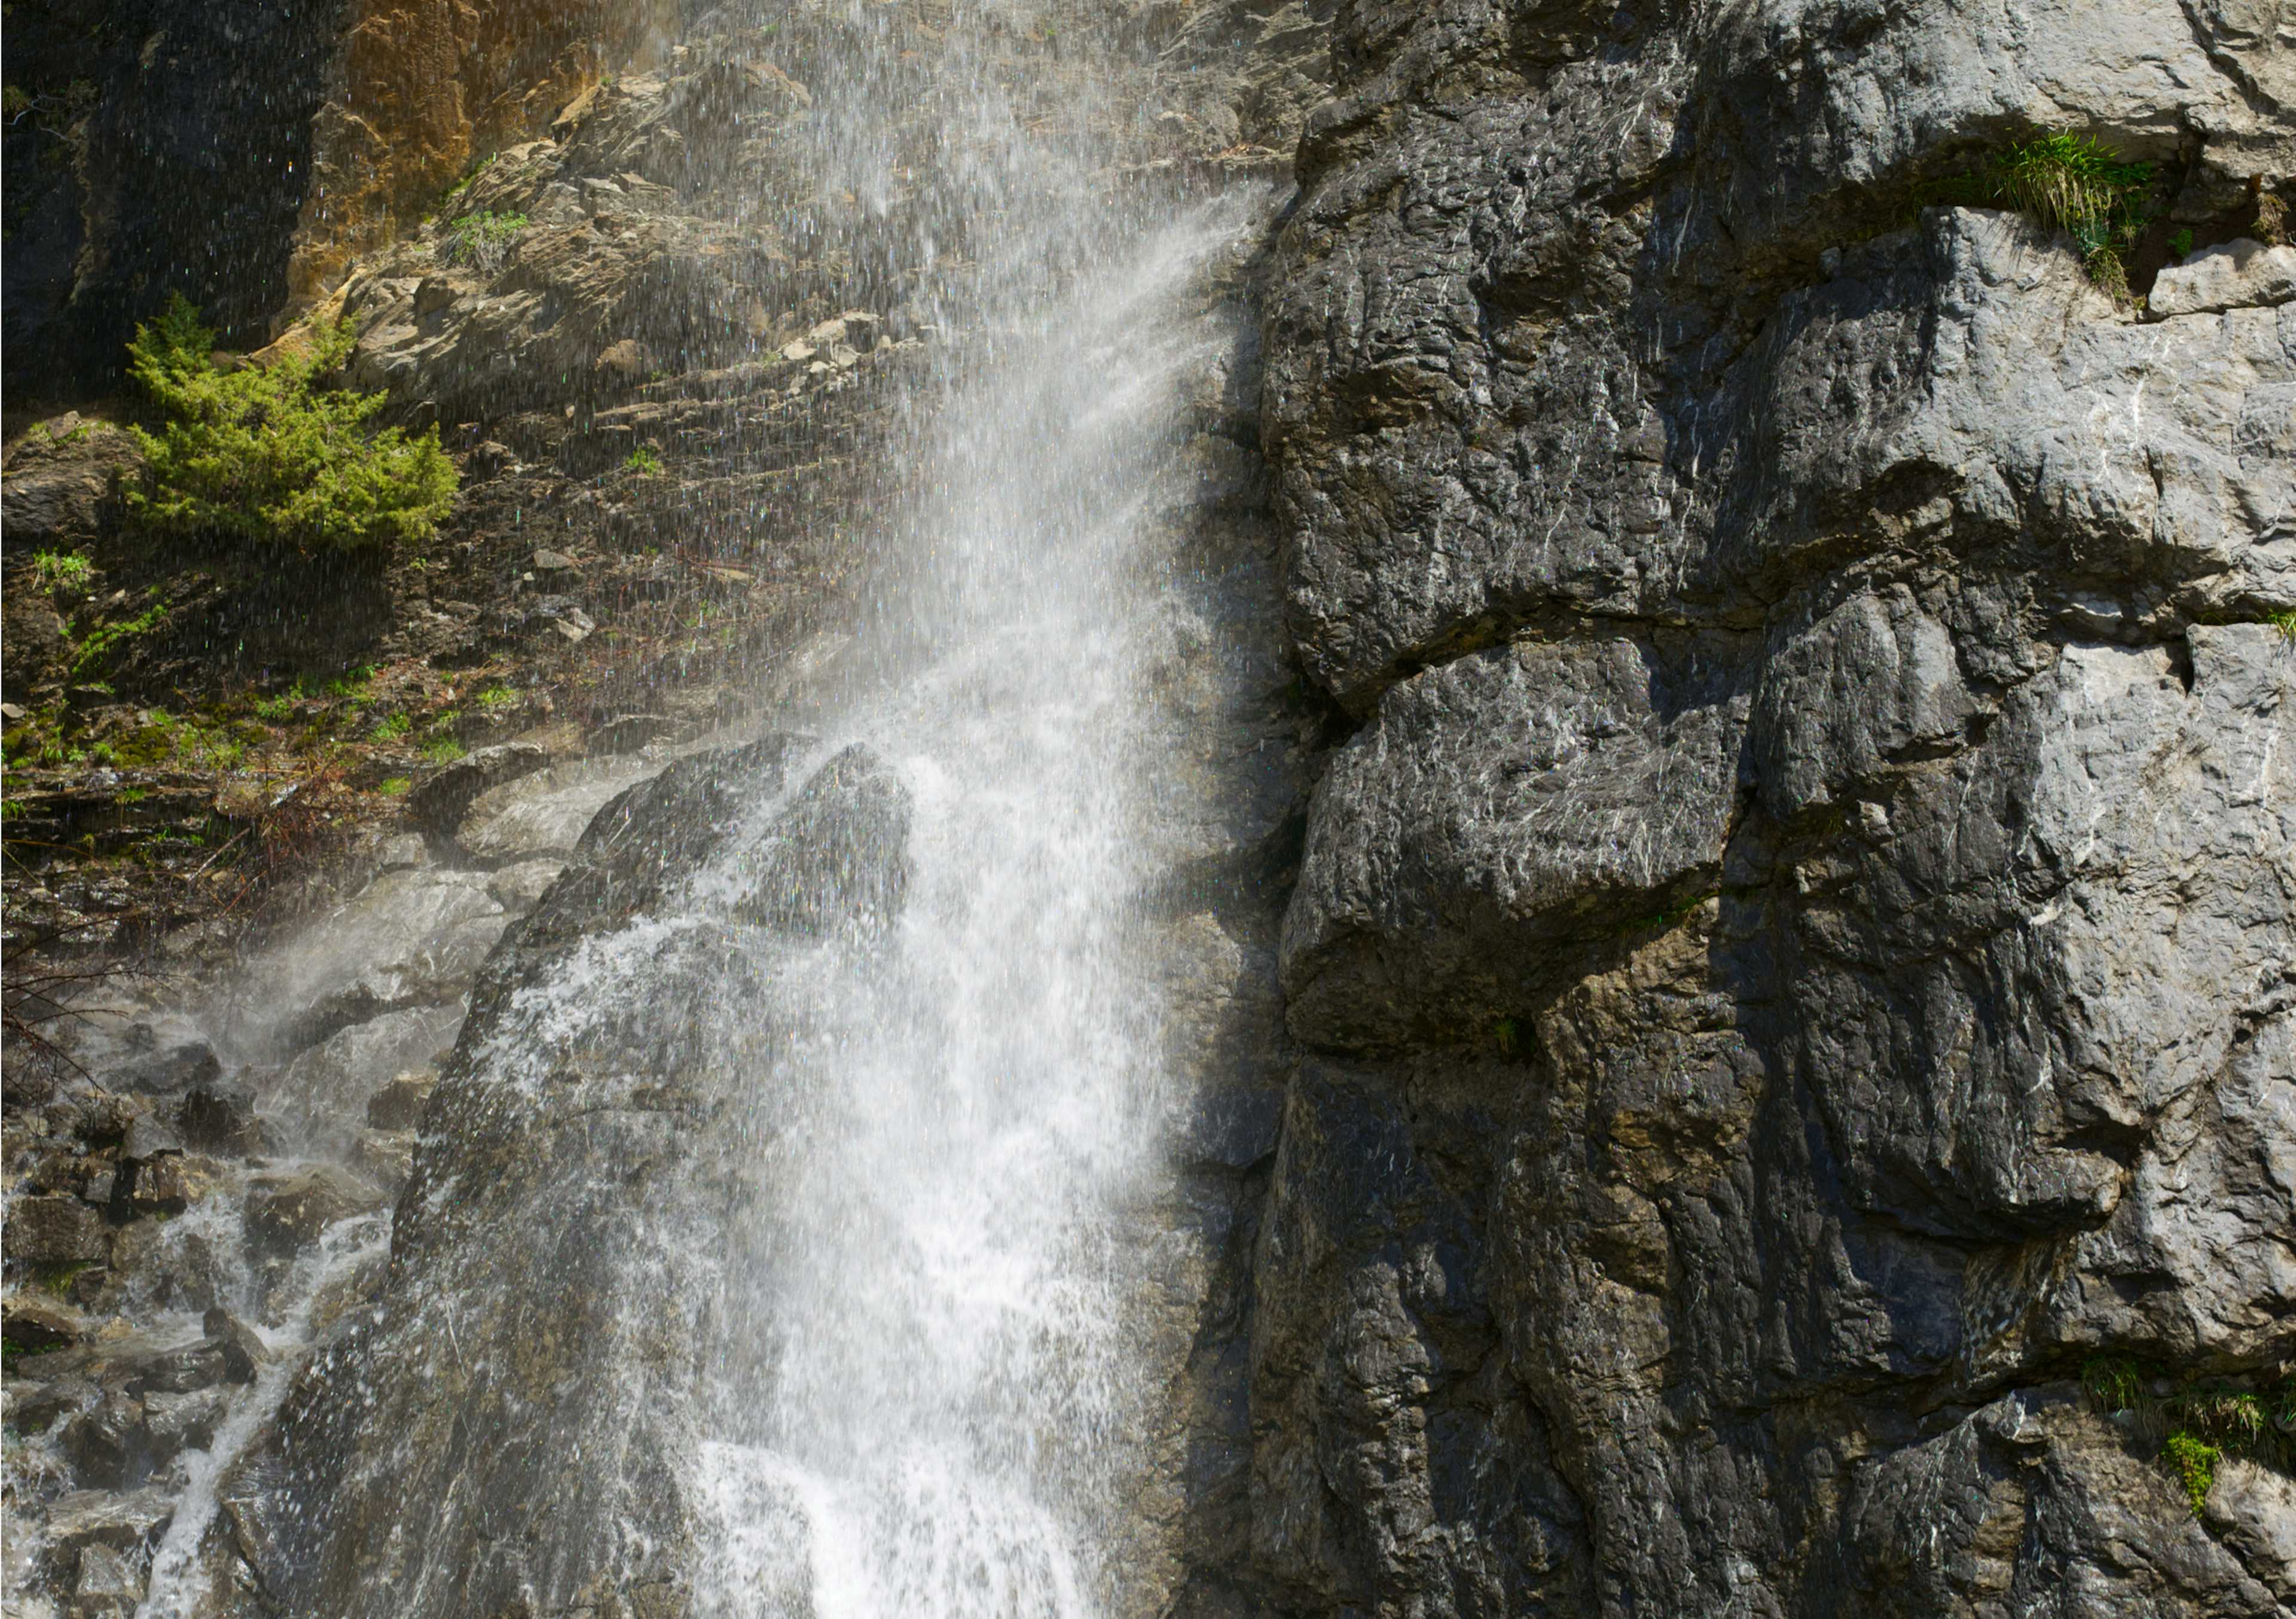 The Goritsa Waterfall